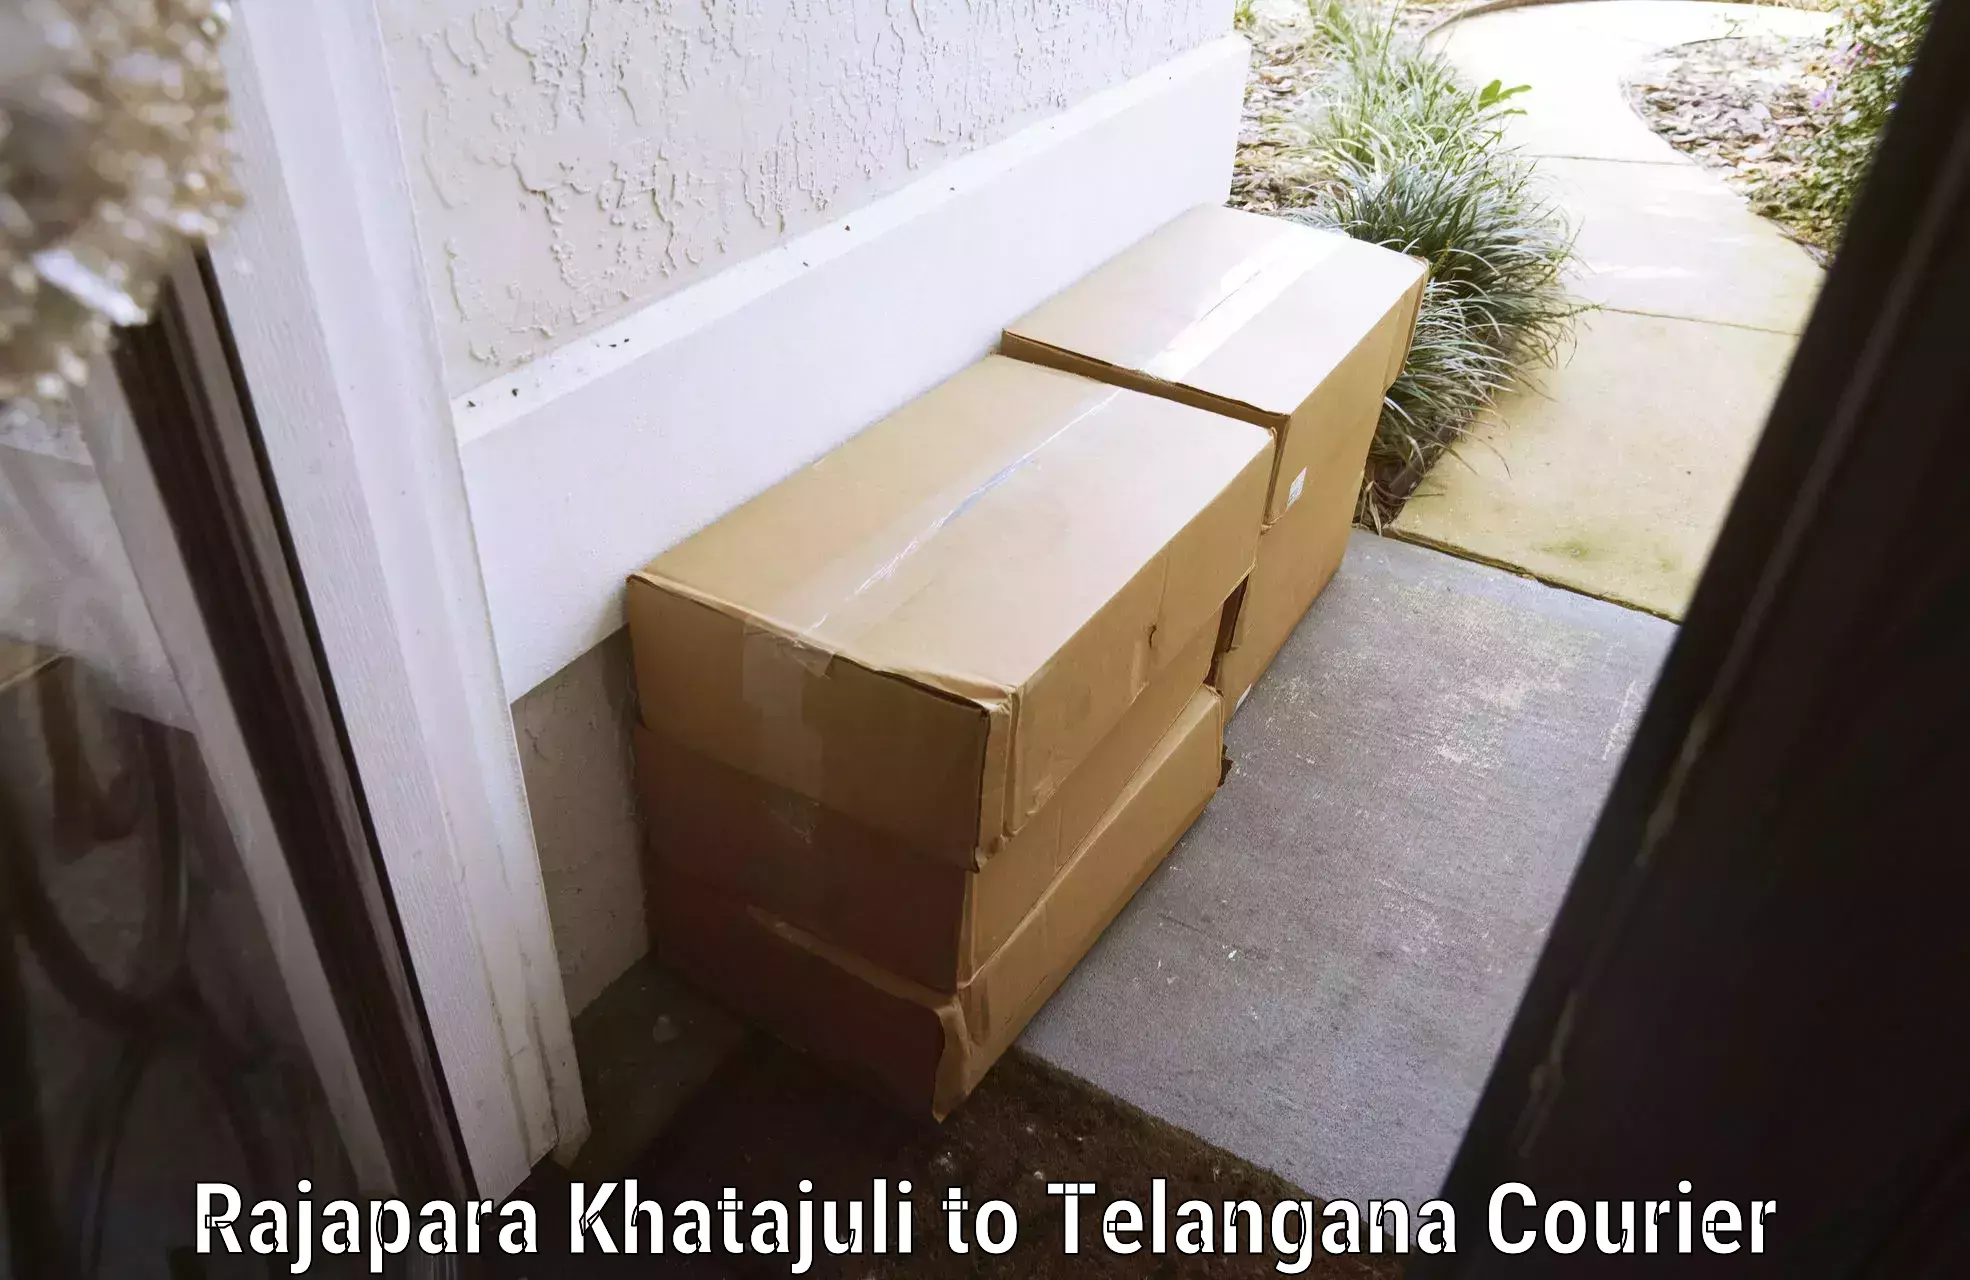 Efficient baggage courier system Rajapara Khatajuli to Bodhan